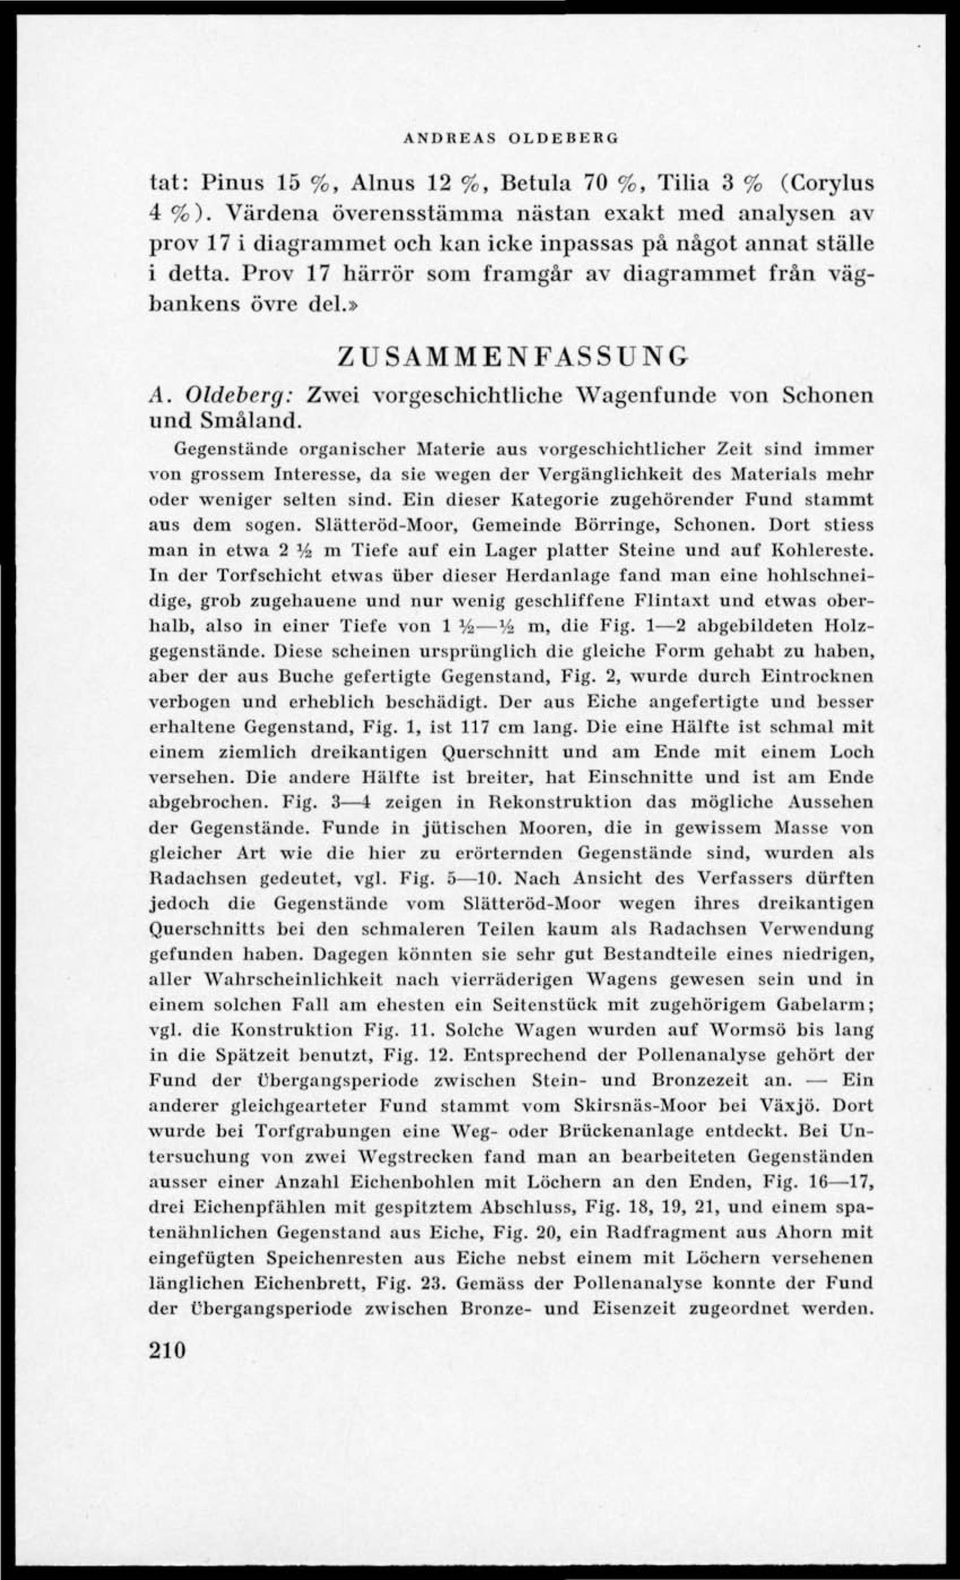 » ZUSAMMENFASSUNG A. Oldeberg: Zwei vorgeschichtliche Wagenfunde von Schonen und Småland.